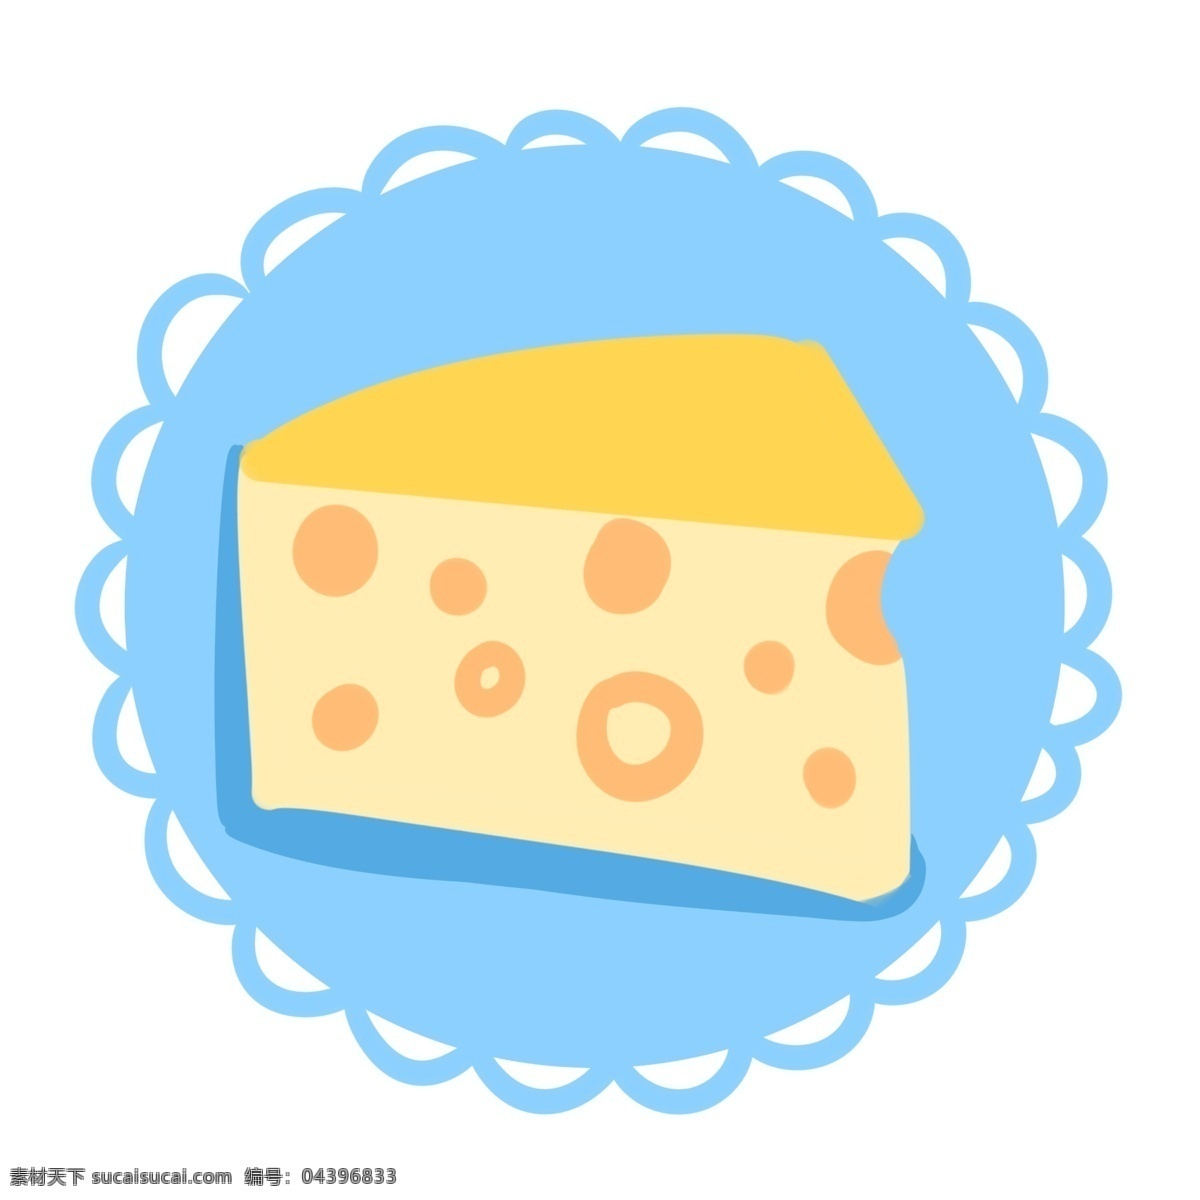 卡通 奶酪 图标 插画 卡通奶酪图标 三角形奶酪 黄色奶酪 美食 甜食 早餐 餐饮 蓝色 圆形